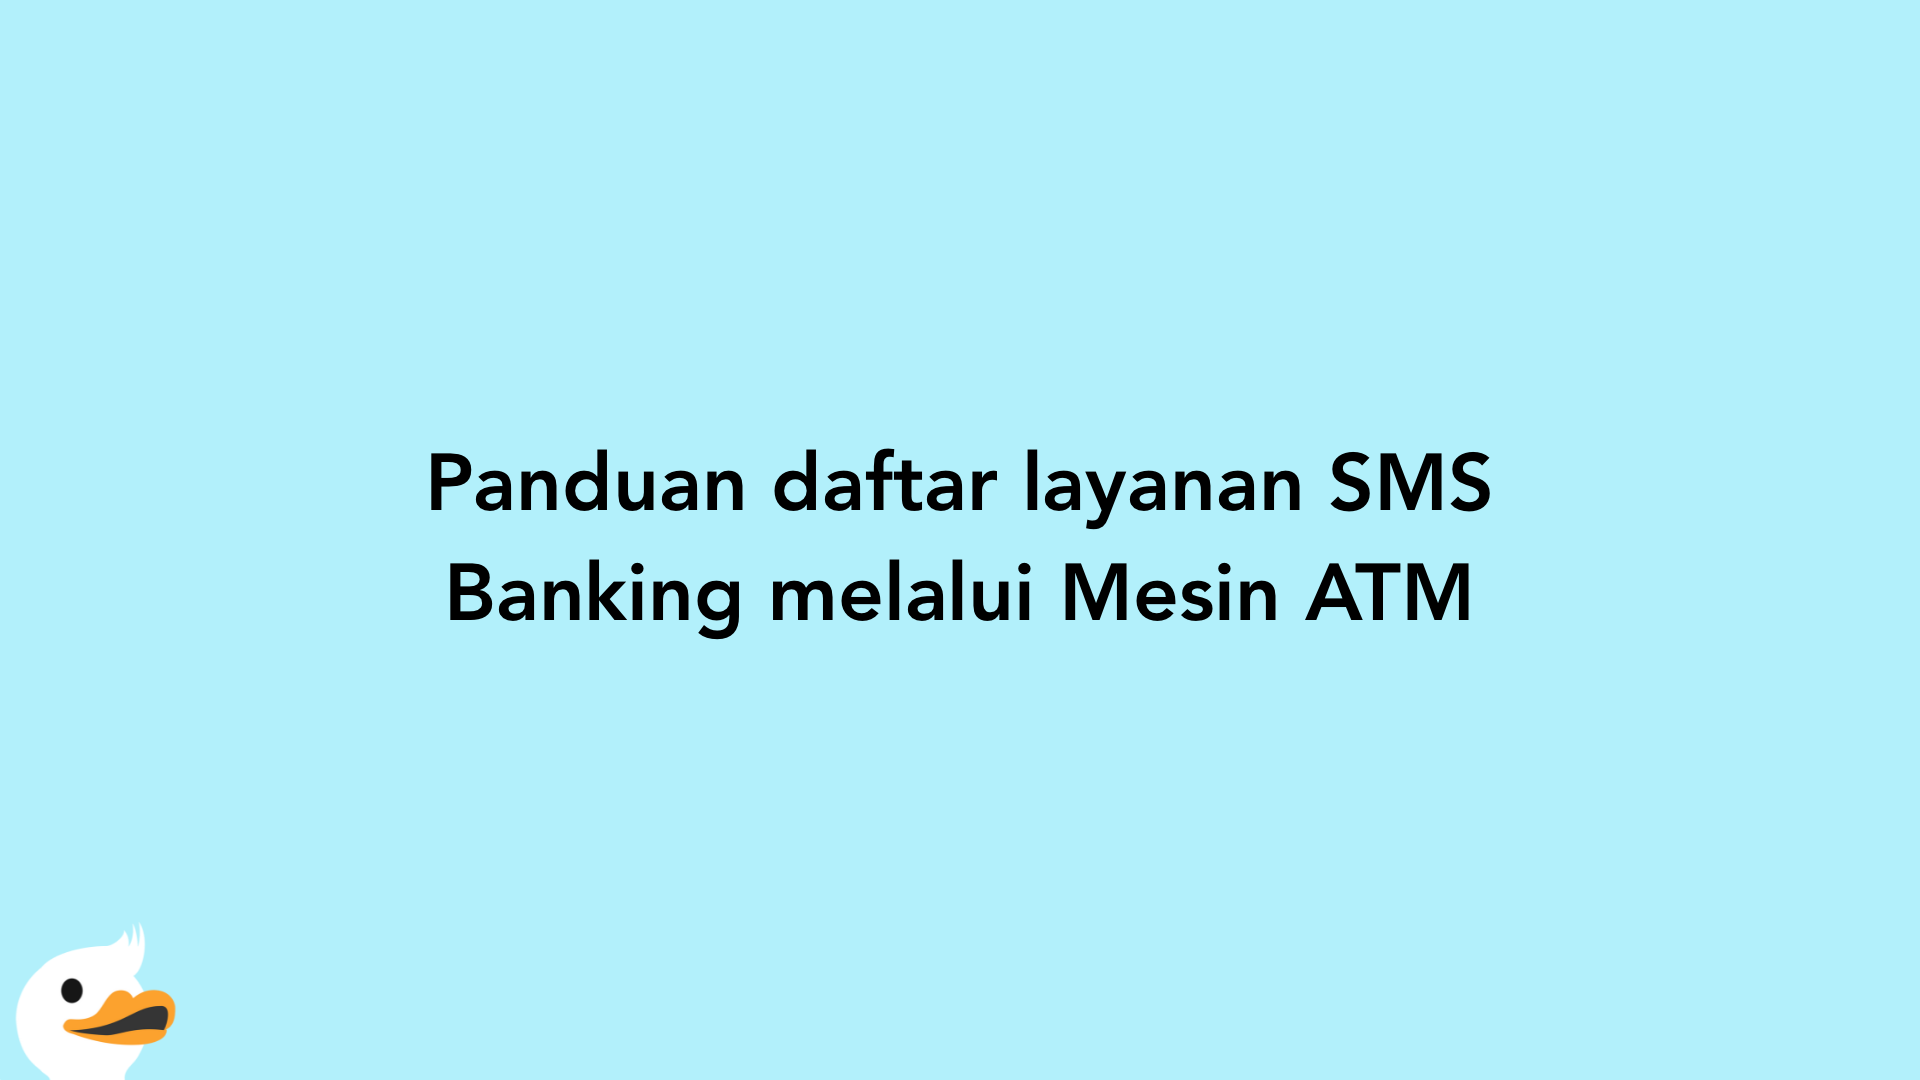 Panduan daftar layanan SMS Banking melalui Mesin ATM